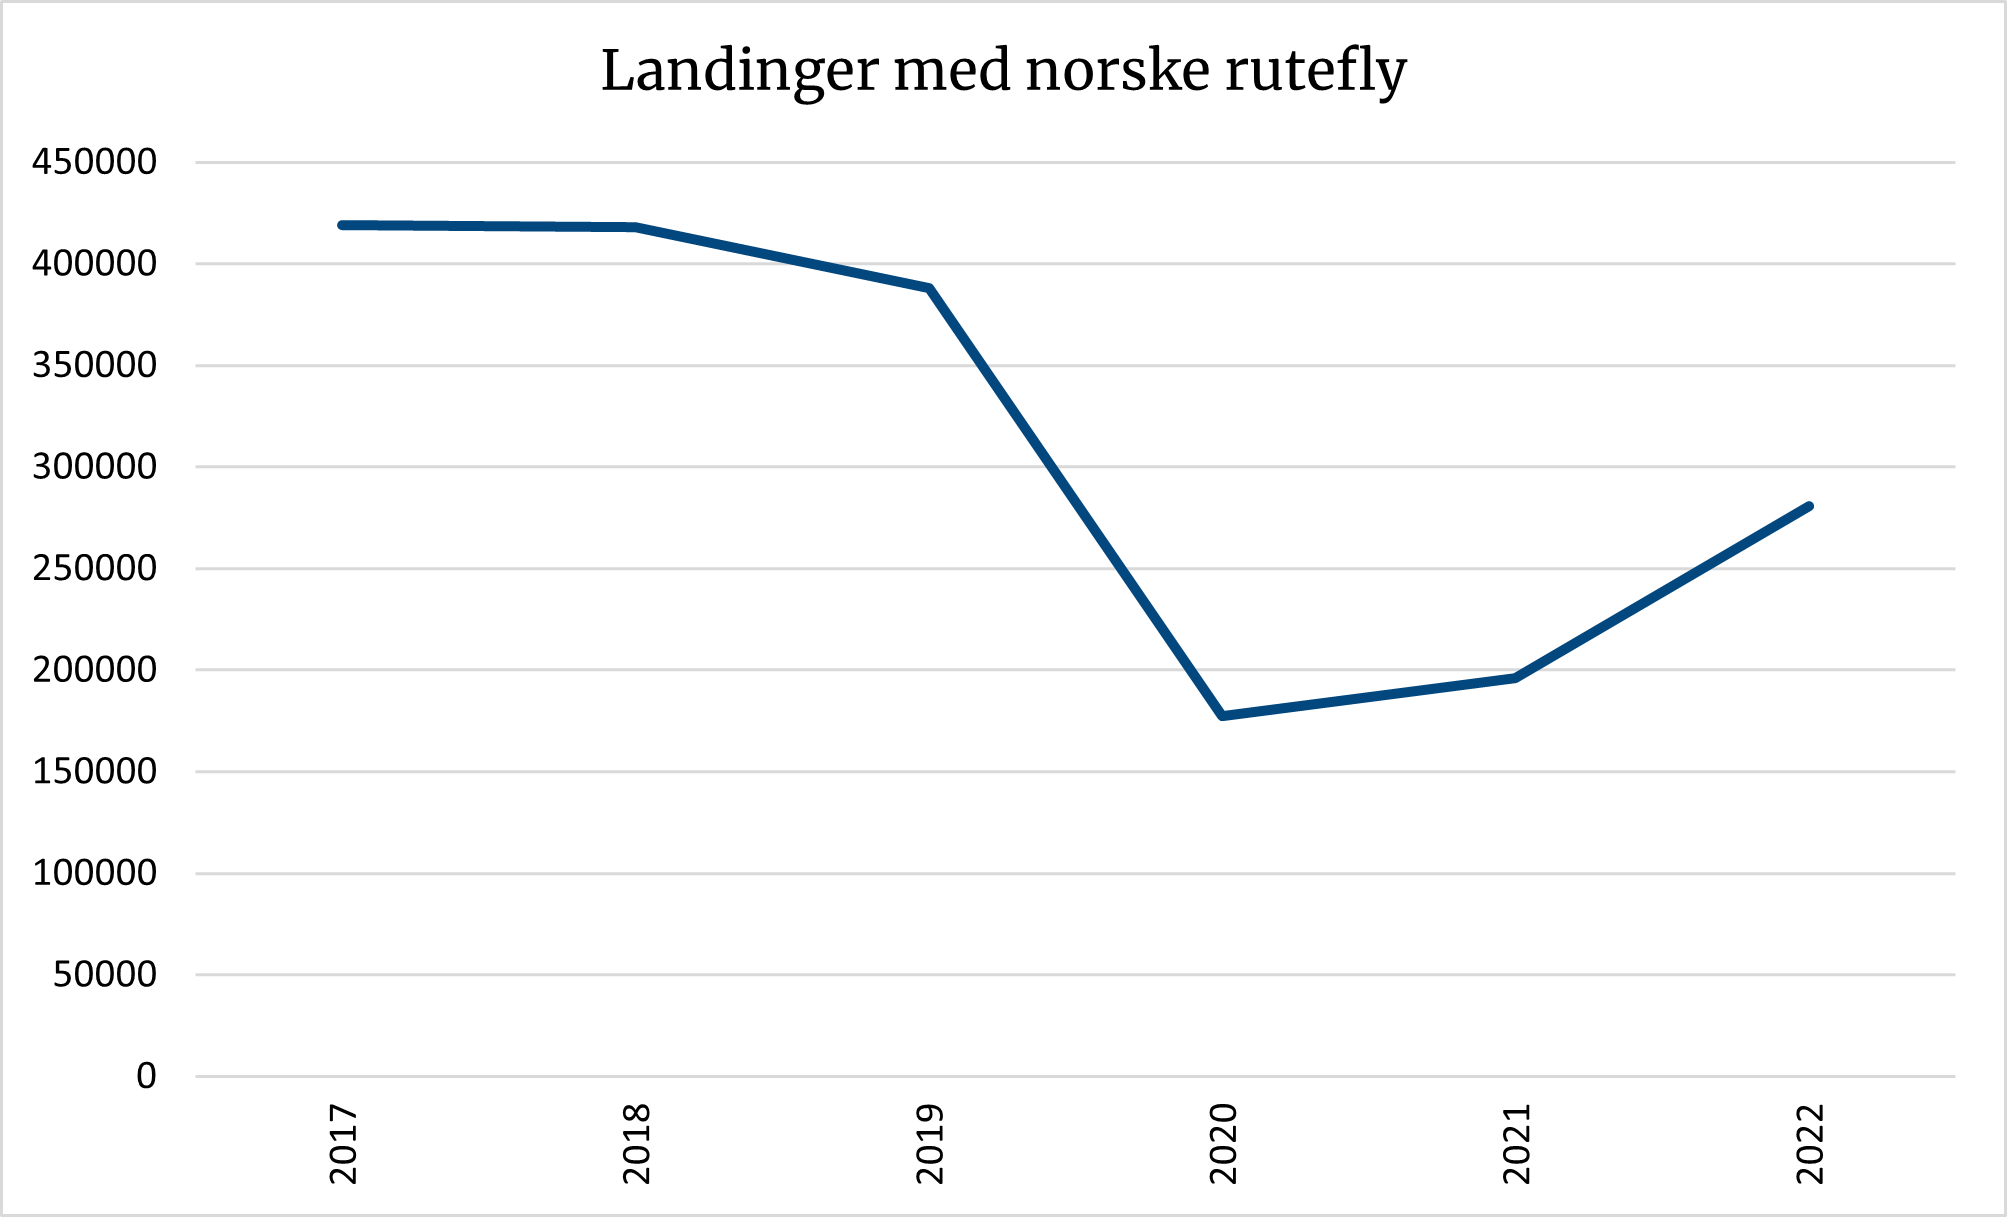 Grafen viser over 400 000 landinger med norske rutefly i 2017, så en nedgang til ca 175 000 i 2020, før den igjen stiger og i 2022 ligger på i underkant av 300 000 landinger.